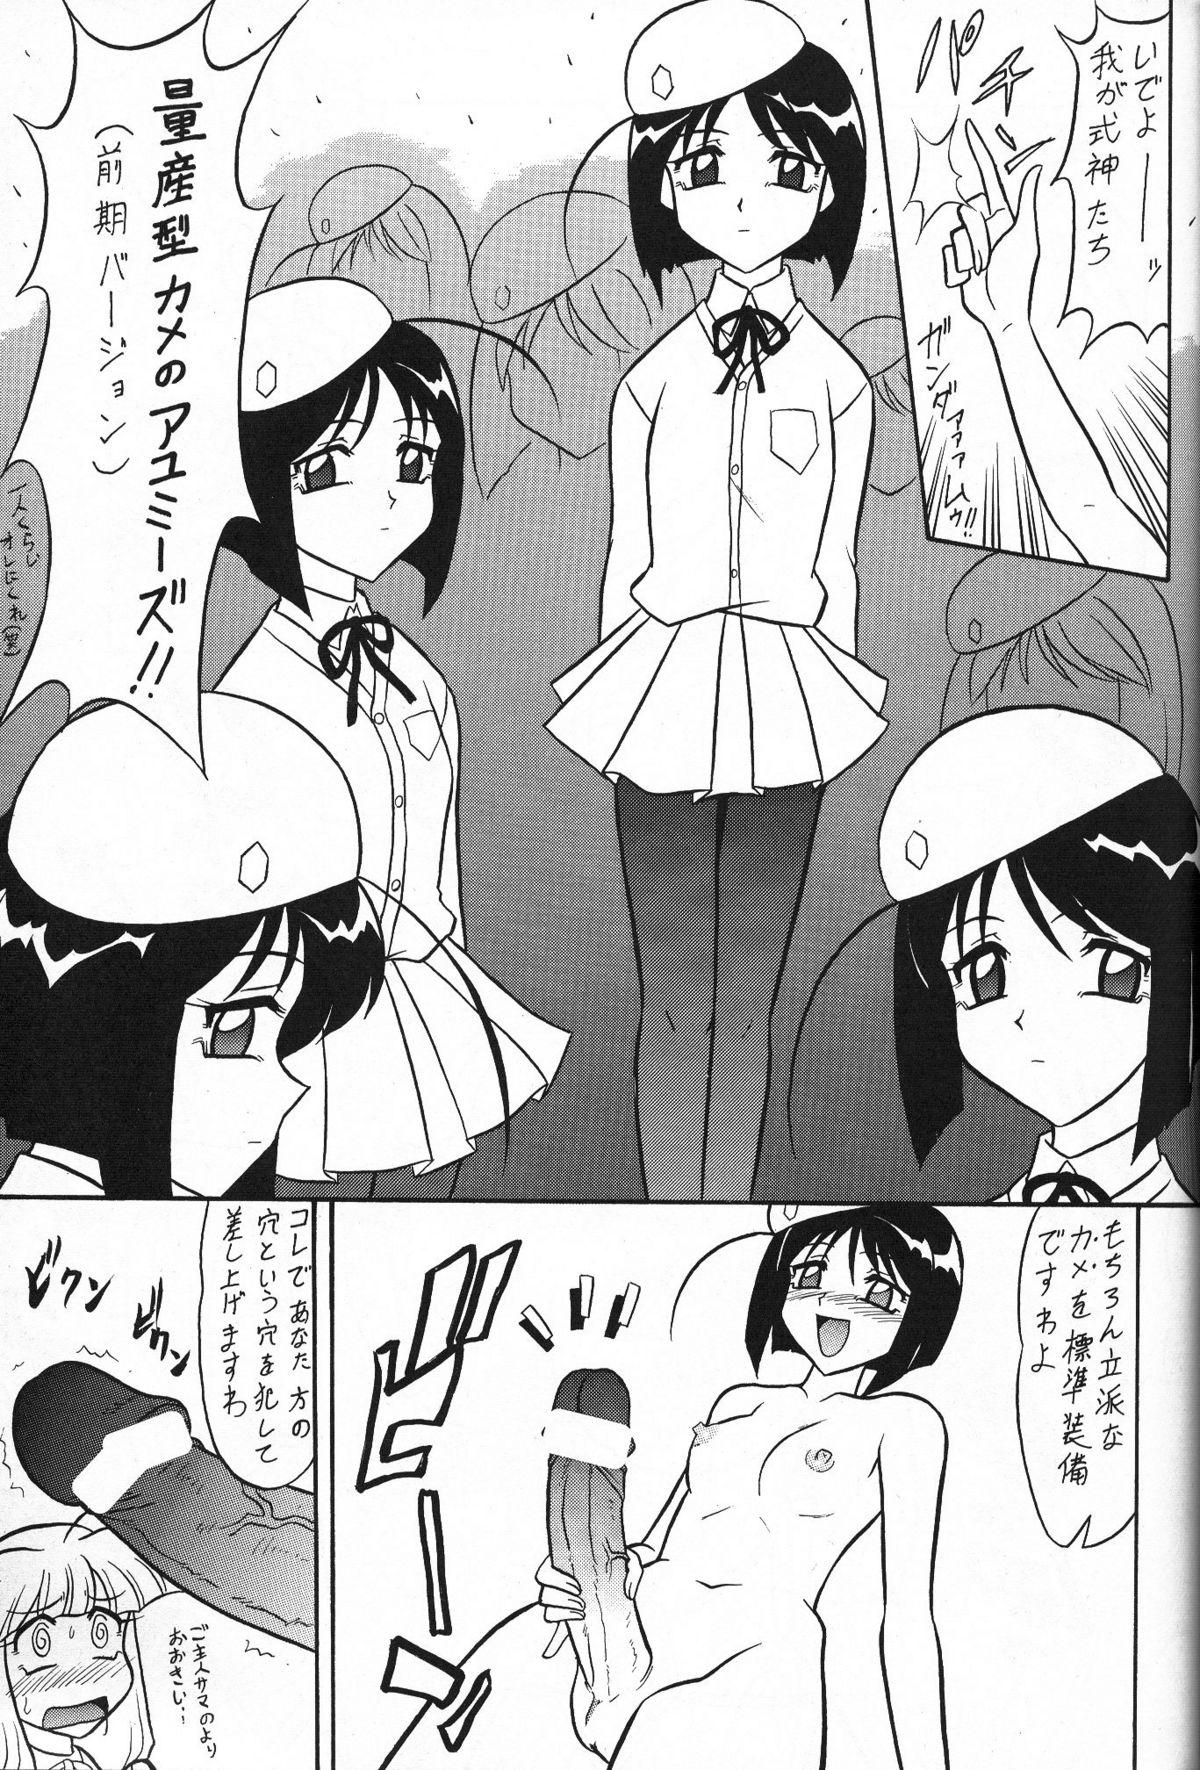 Boy Girl Sugoi Ikioi 13 - Tenshi no shippo Coroa - Page 6